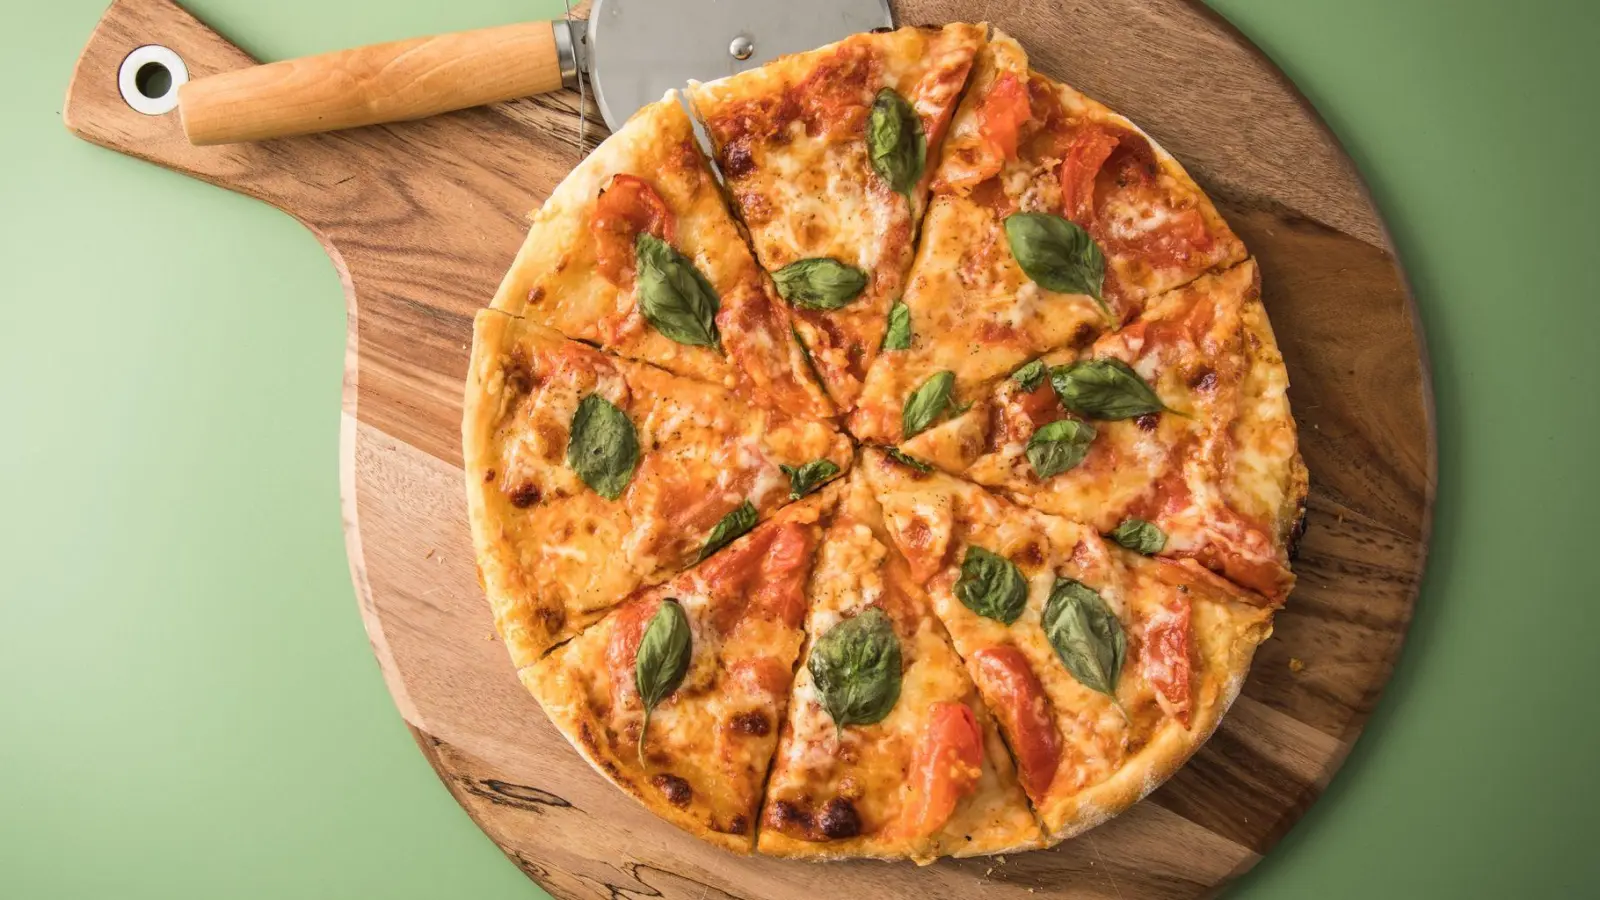 Pizza kann man mit Fertigteig schnell selbst machen - doch manche sind besser als andere. (Foto: Christin Klose/dpa-tmn)